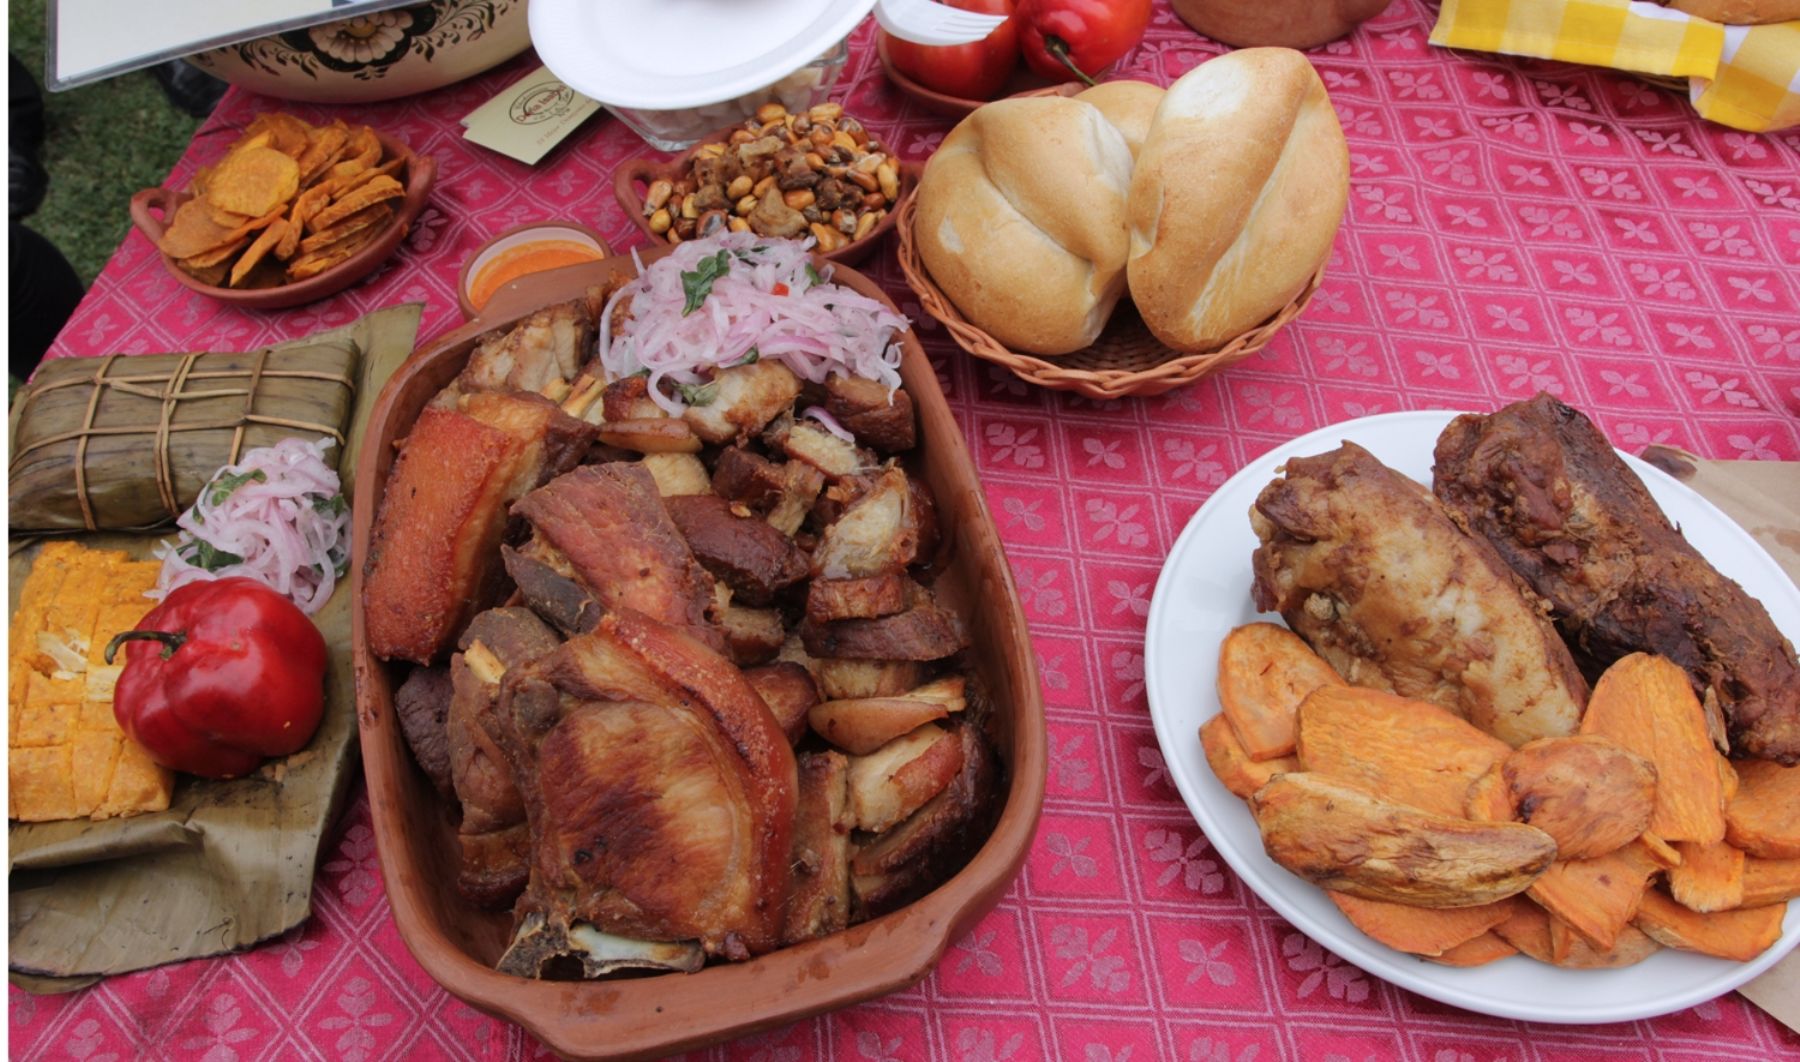 La gastronomía peruana tiene en el desayuno a un rubro en el que resulta insuperable en el mundo. El primer y más importante alimento de la jornada diaria constituye un festival de sabores con diversas versiones regionales que cautivan el paladar de peruanos y visitantes extranjeros. ANDINA/Difusión